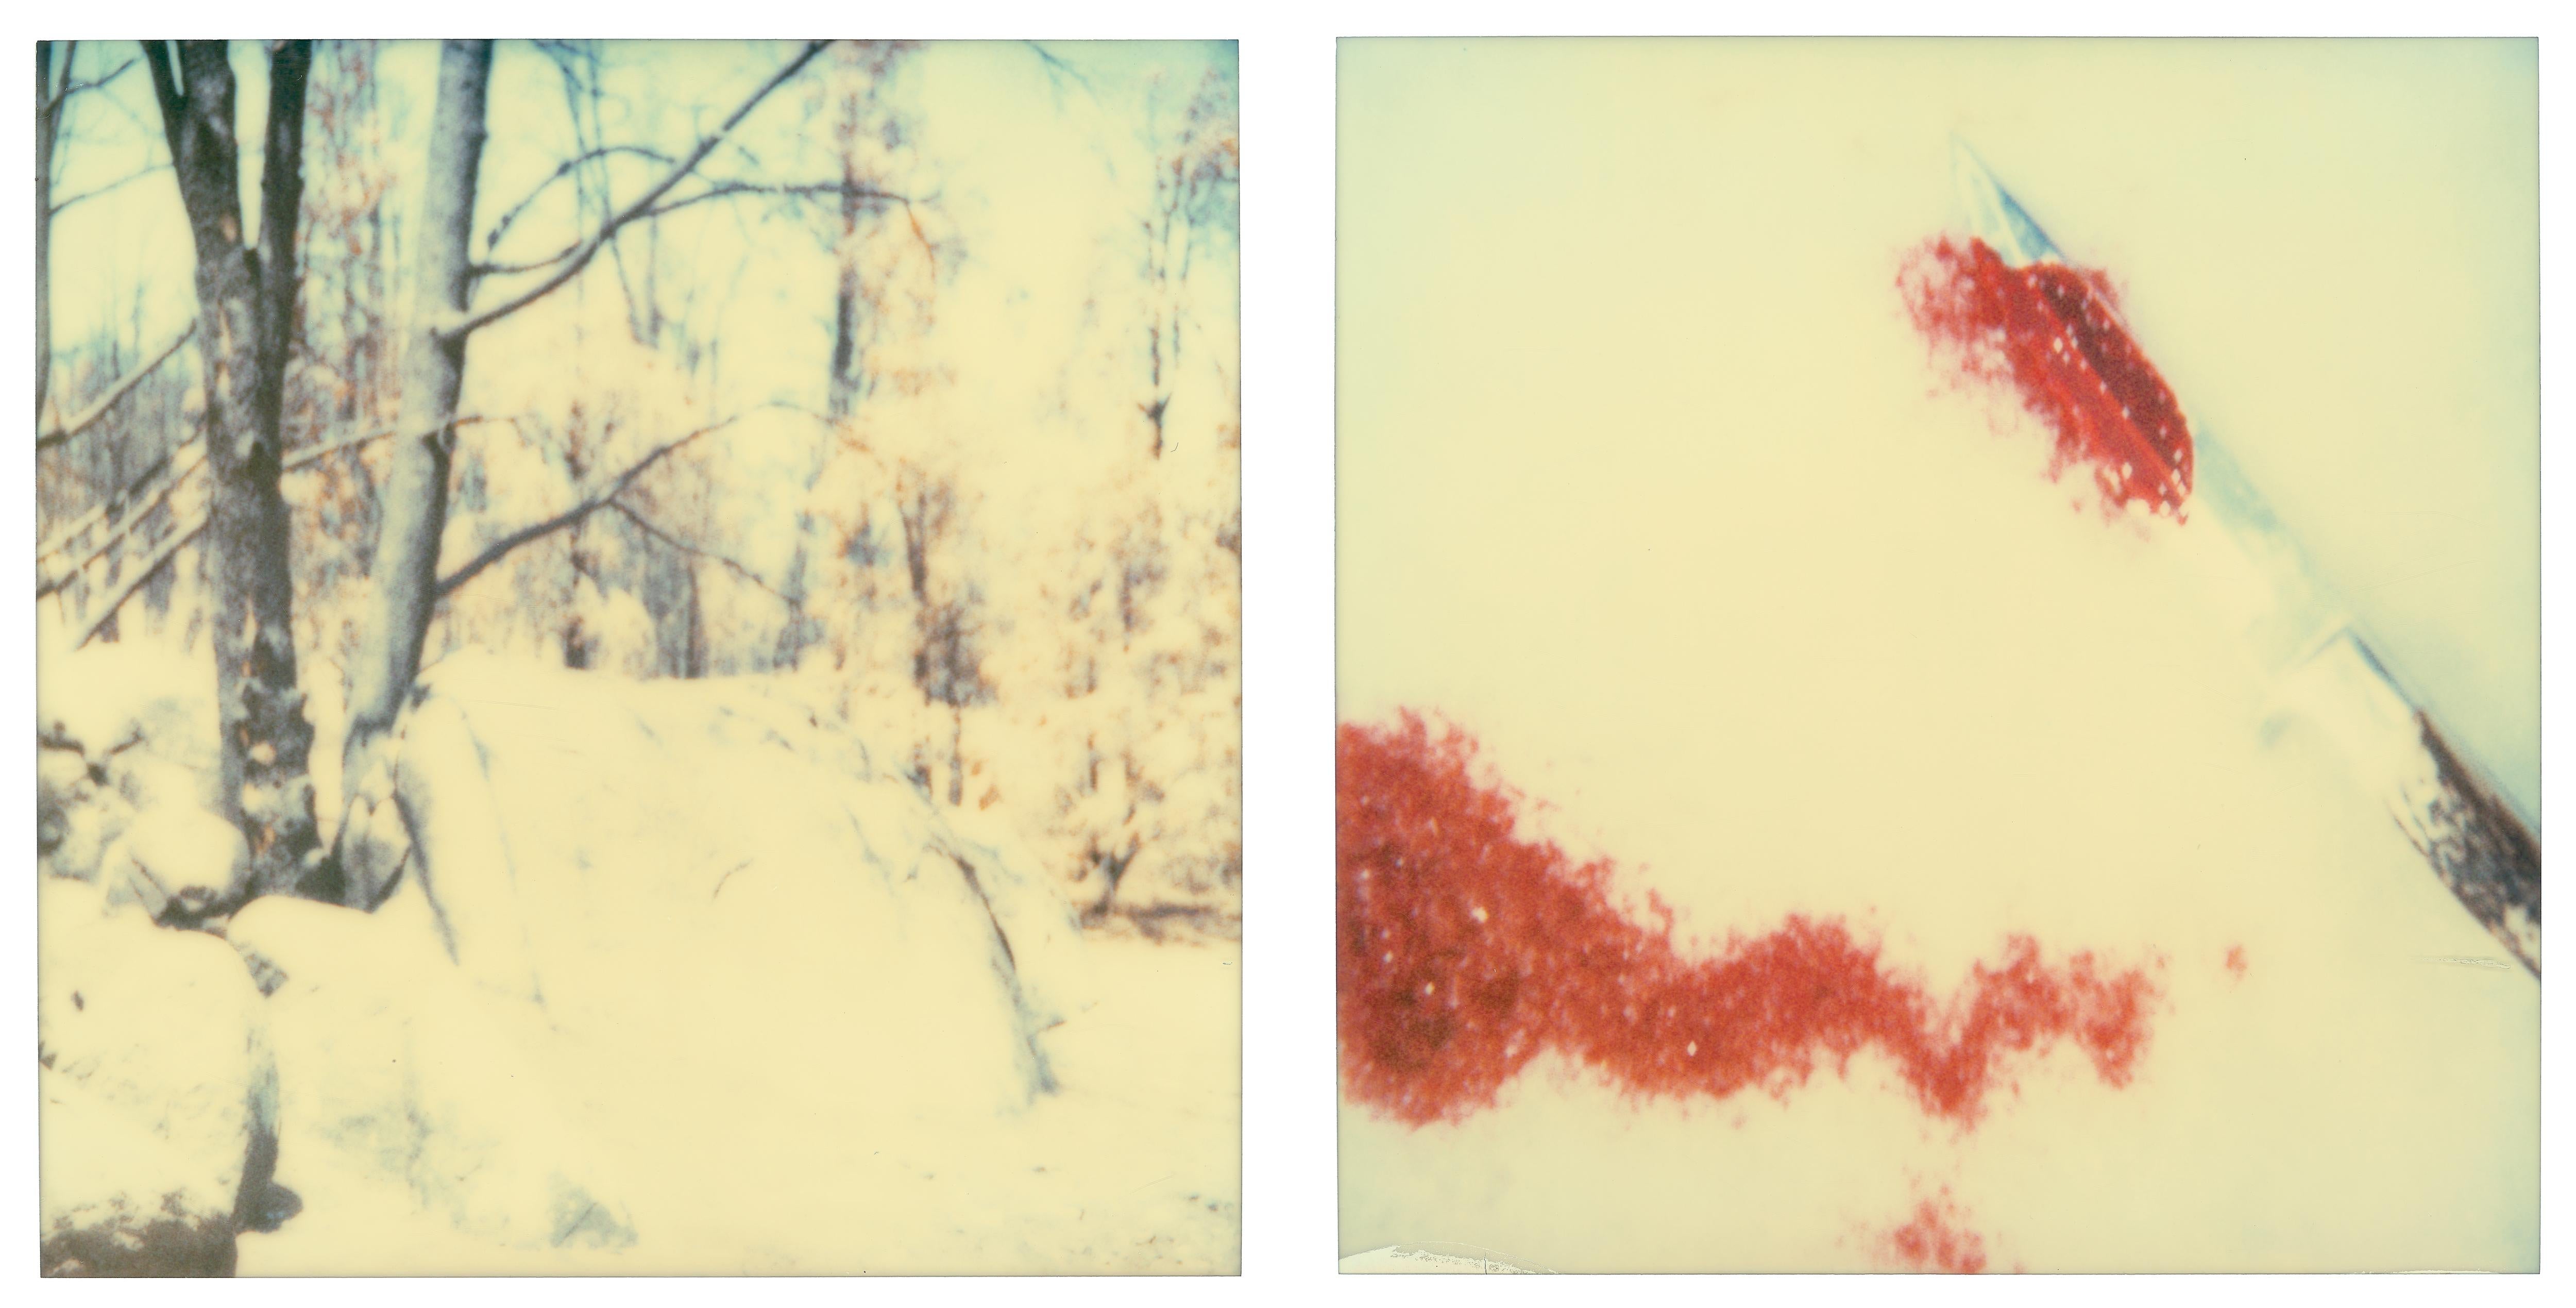 Color Photograph Stefanie Schneider - Plateaux (Stranger than Paradise) - analogique, Polaroid, contemporain